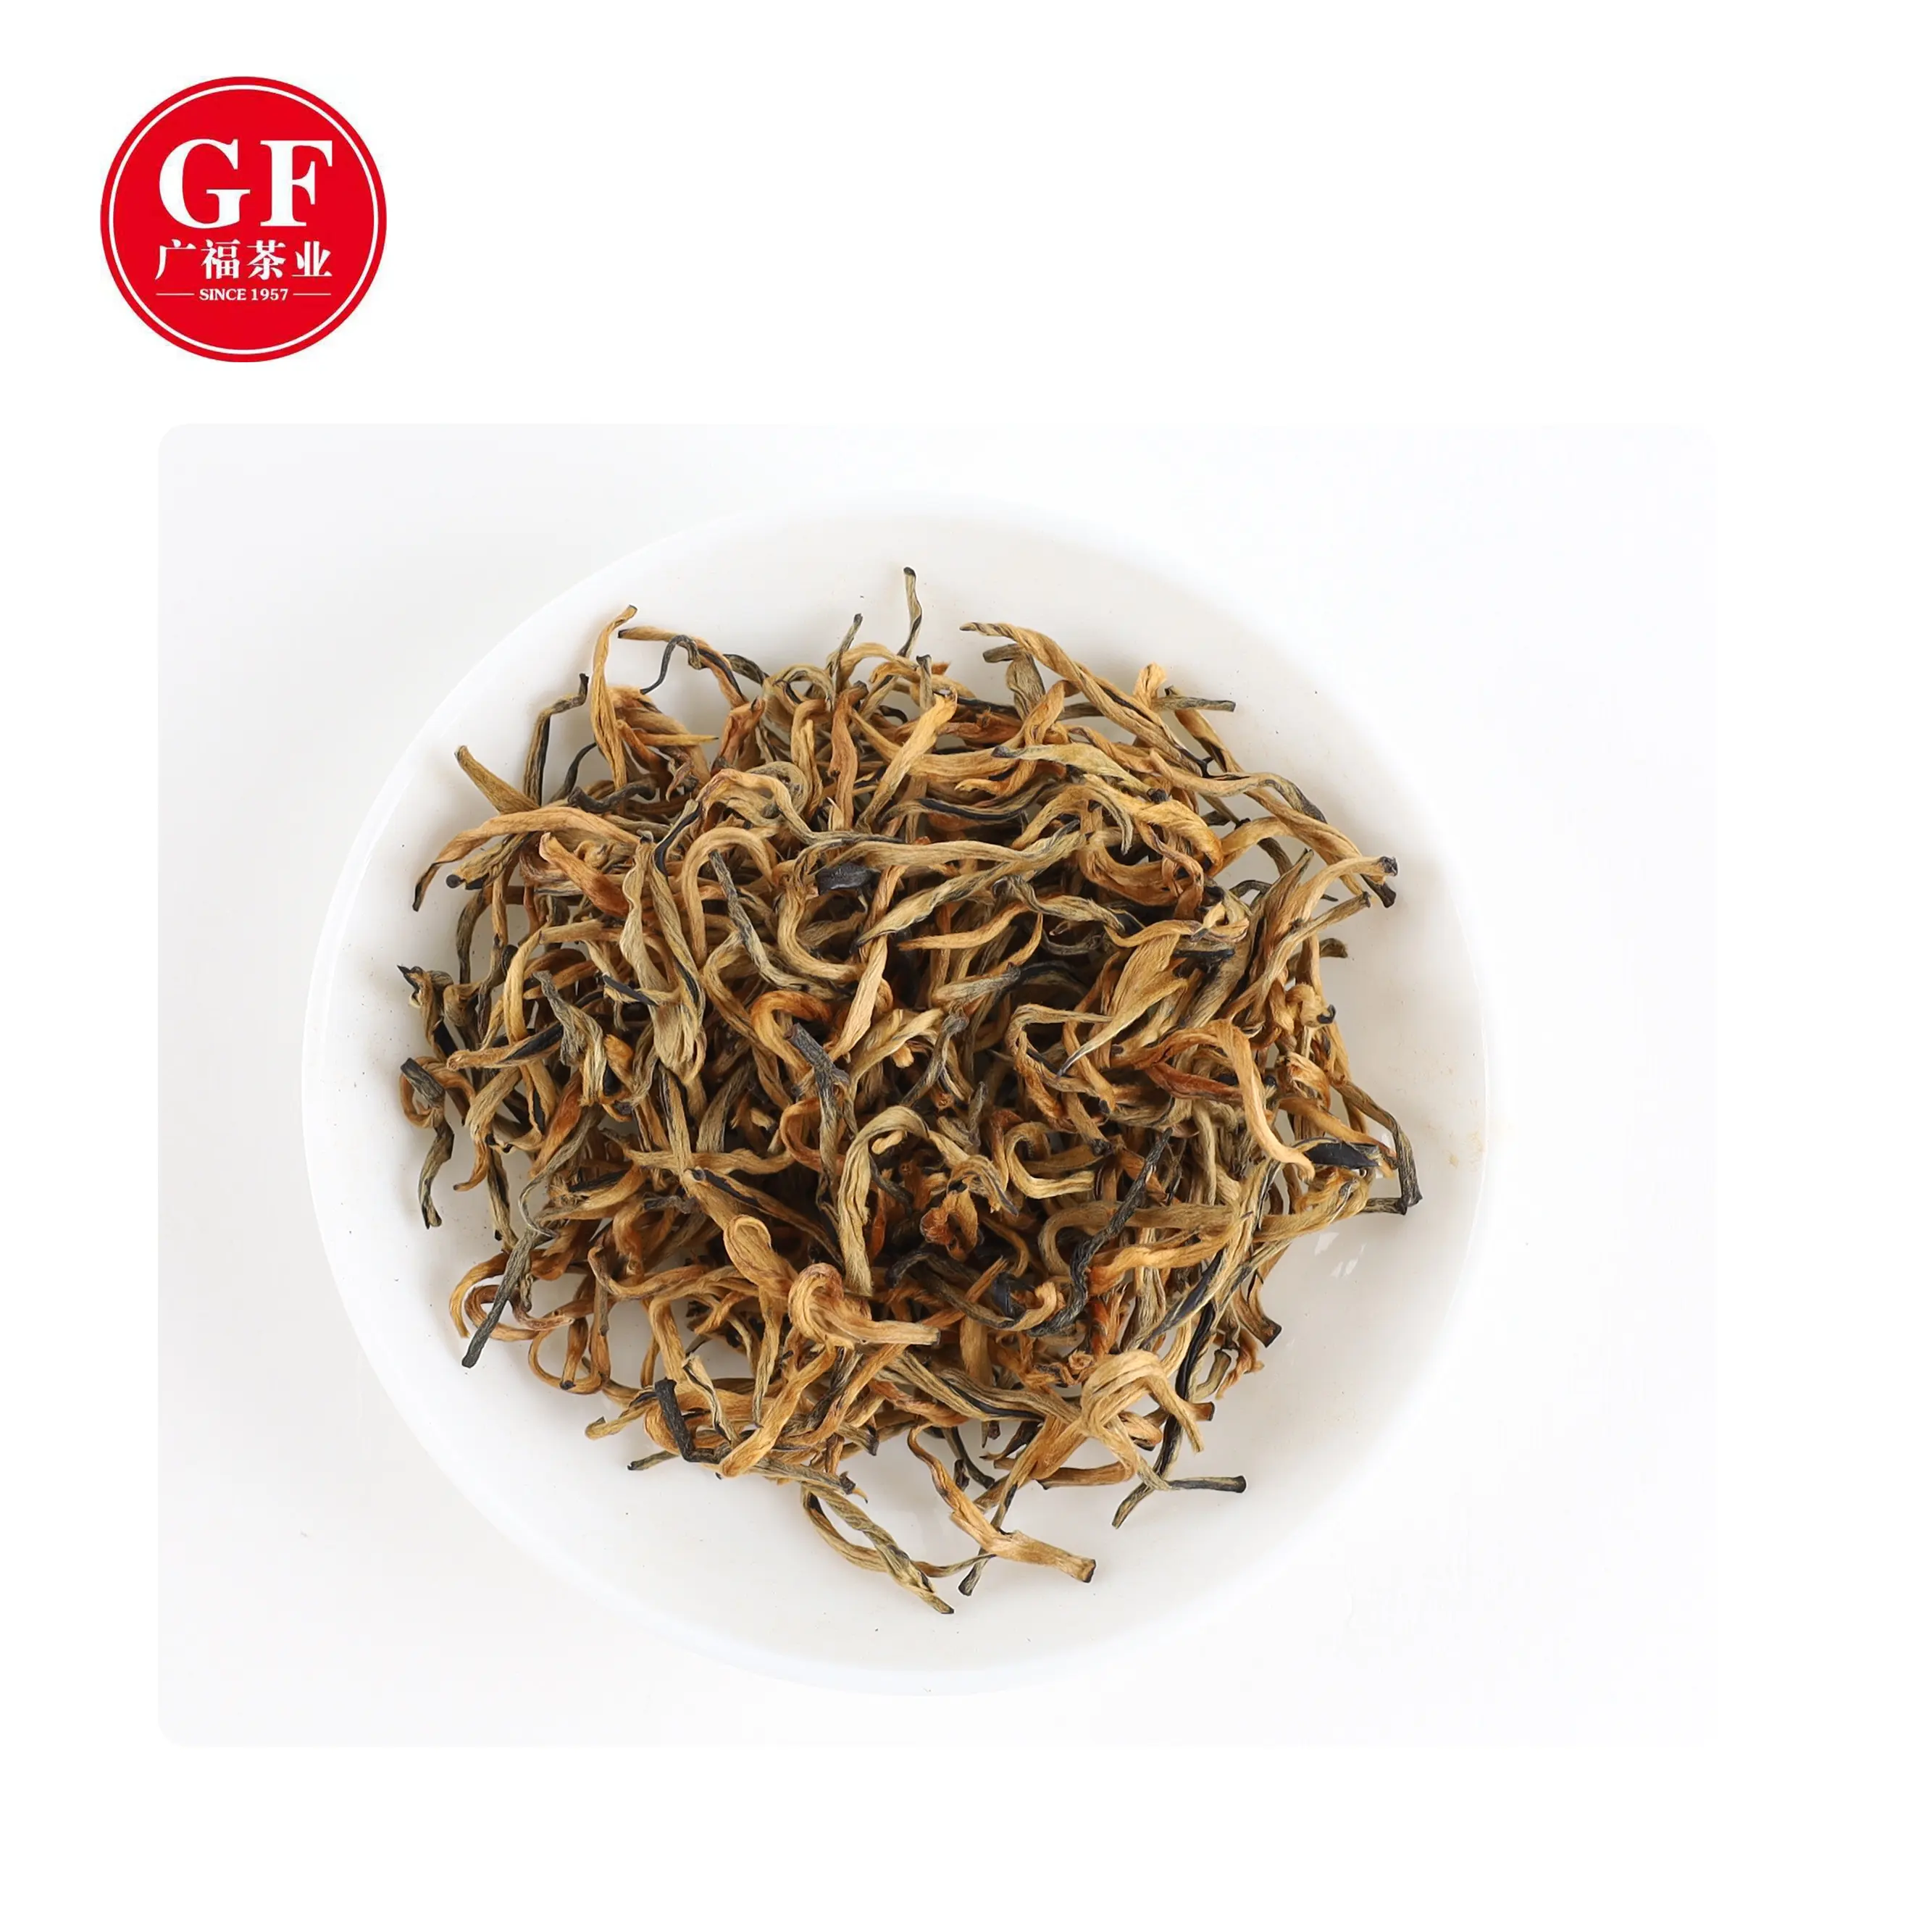 China gongfu golden black bulk tea